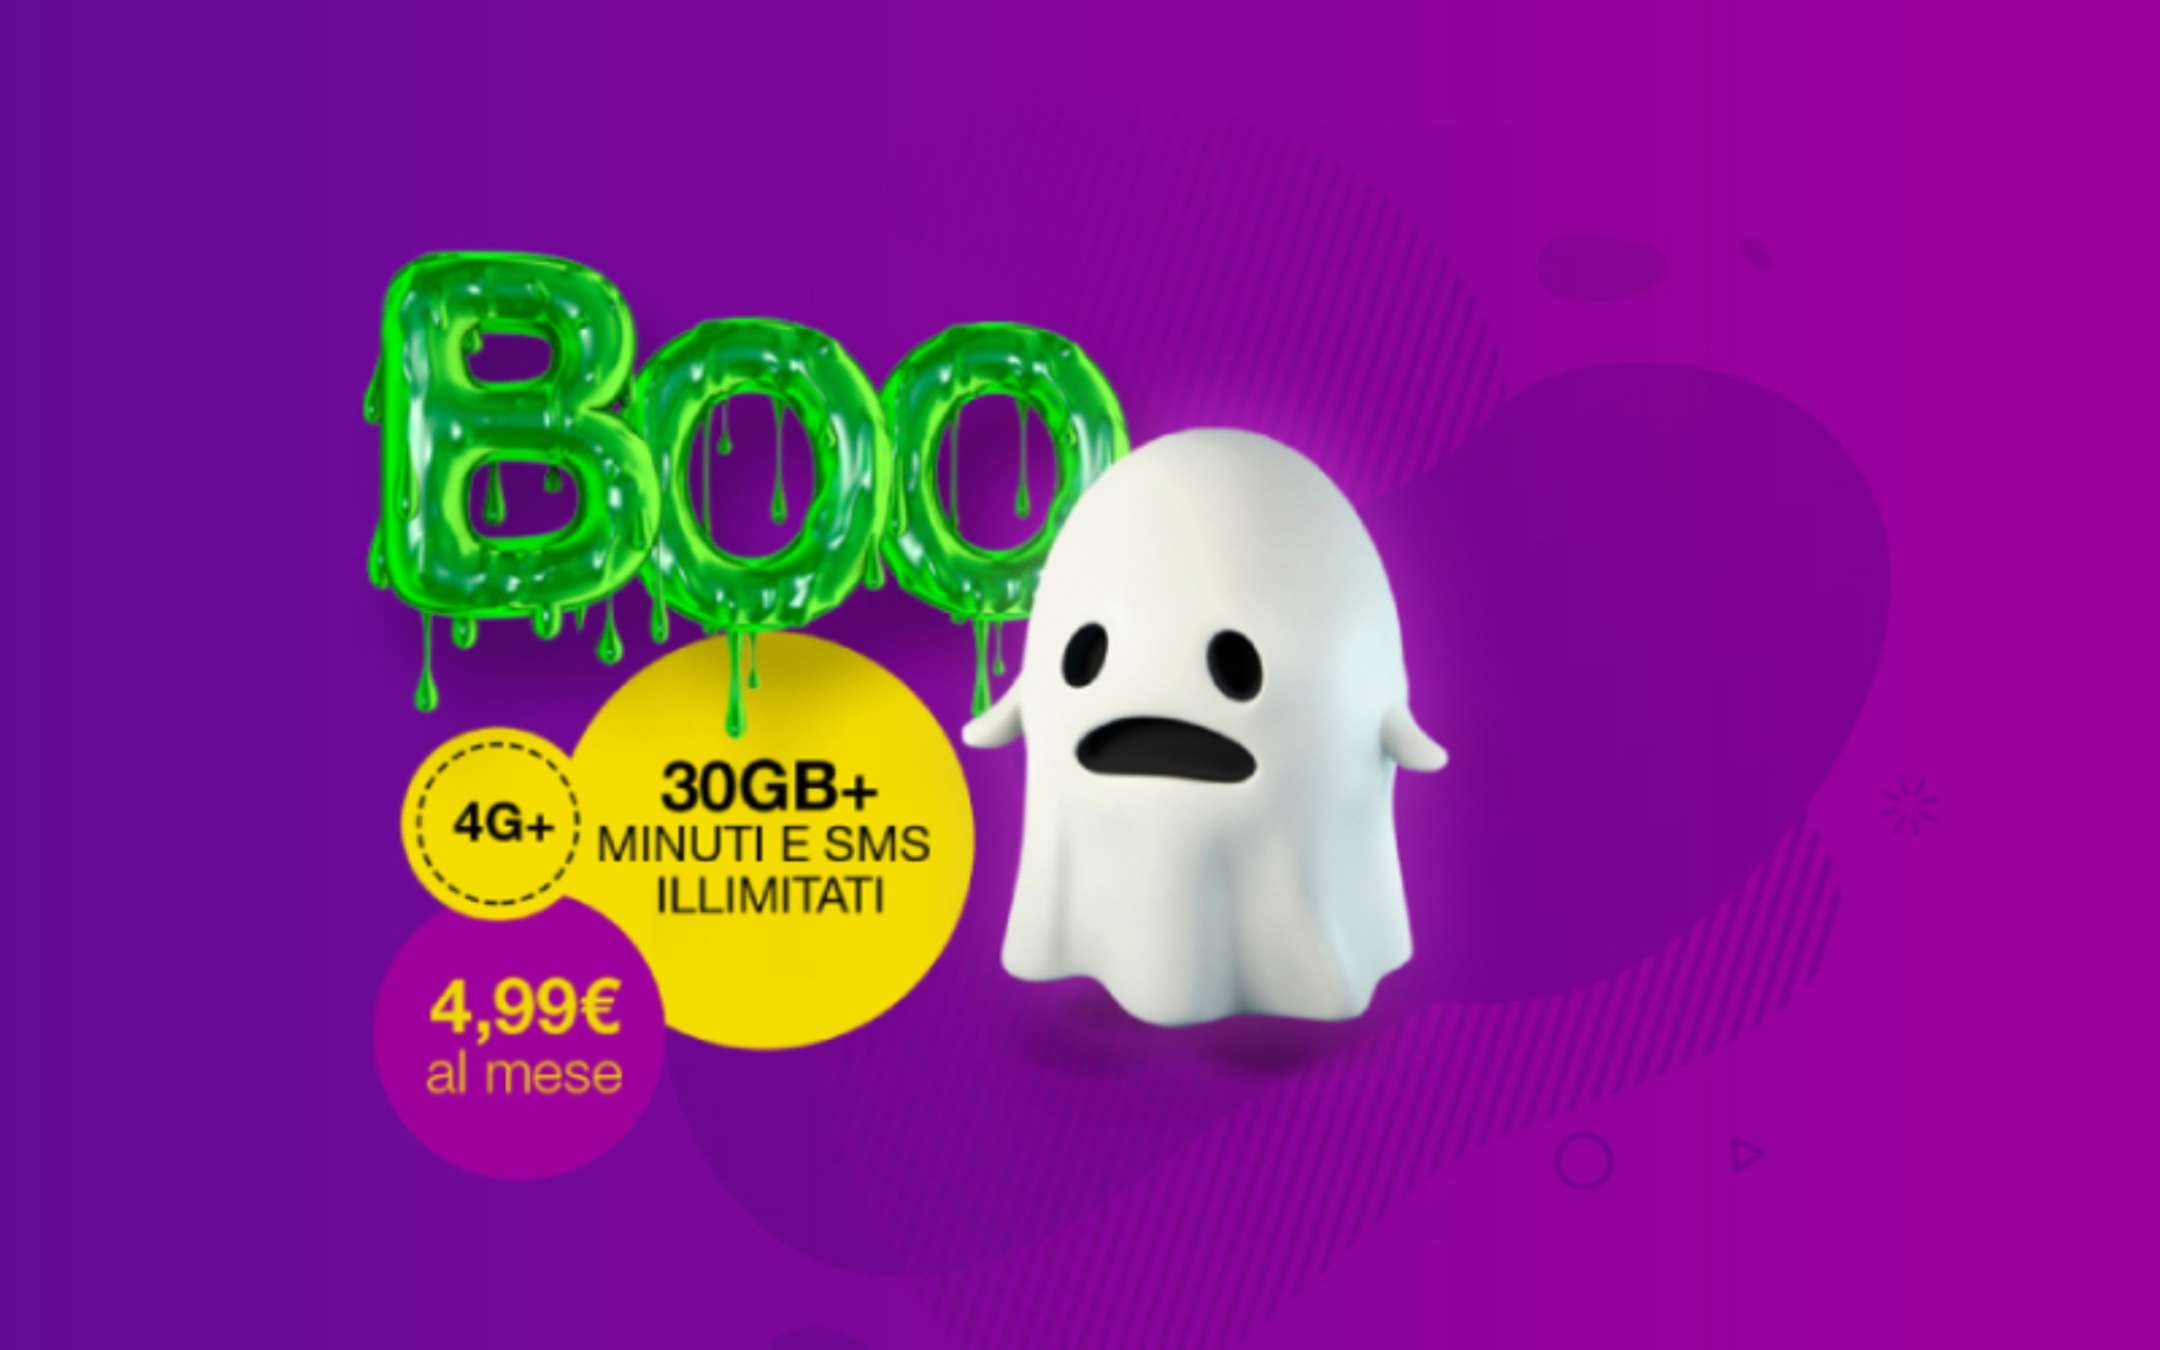 Poste Mobile: promo Halloween a 4,99€ al mese